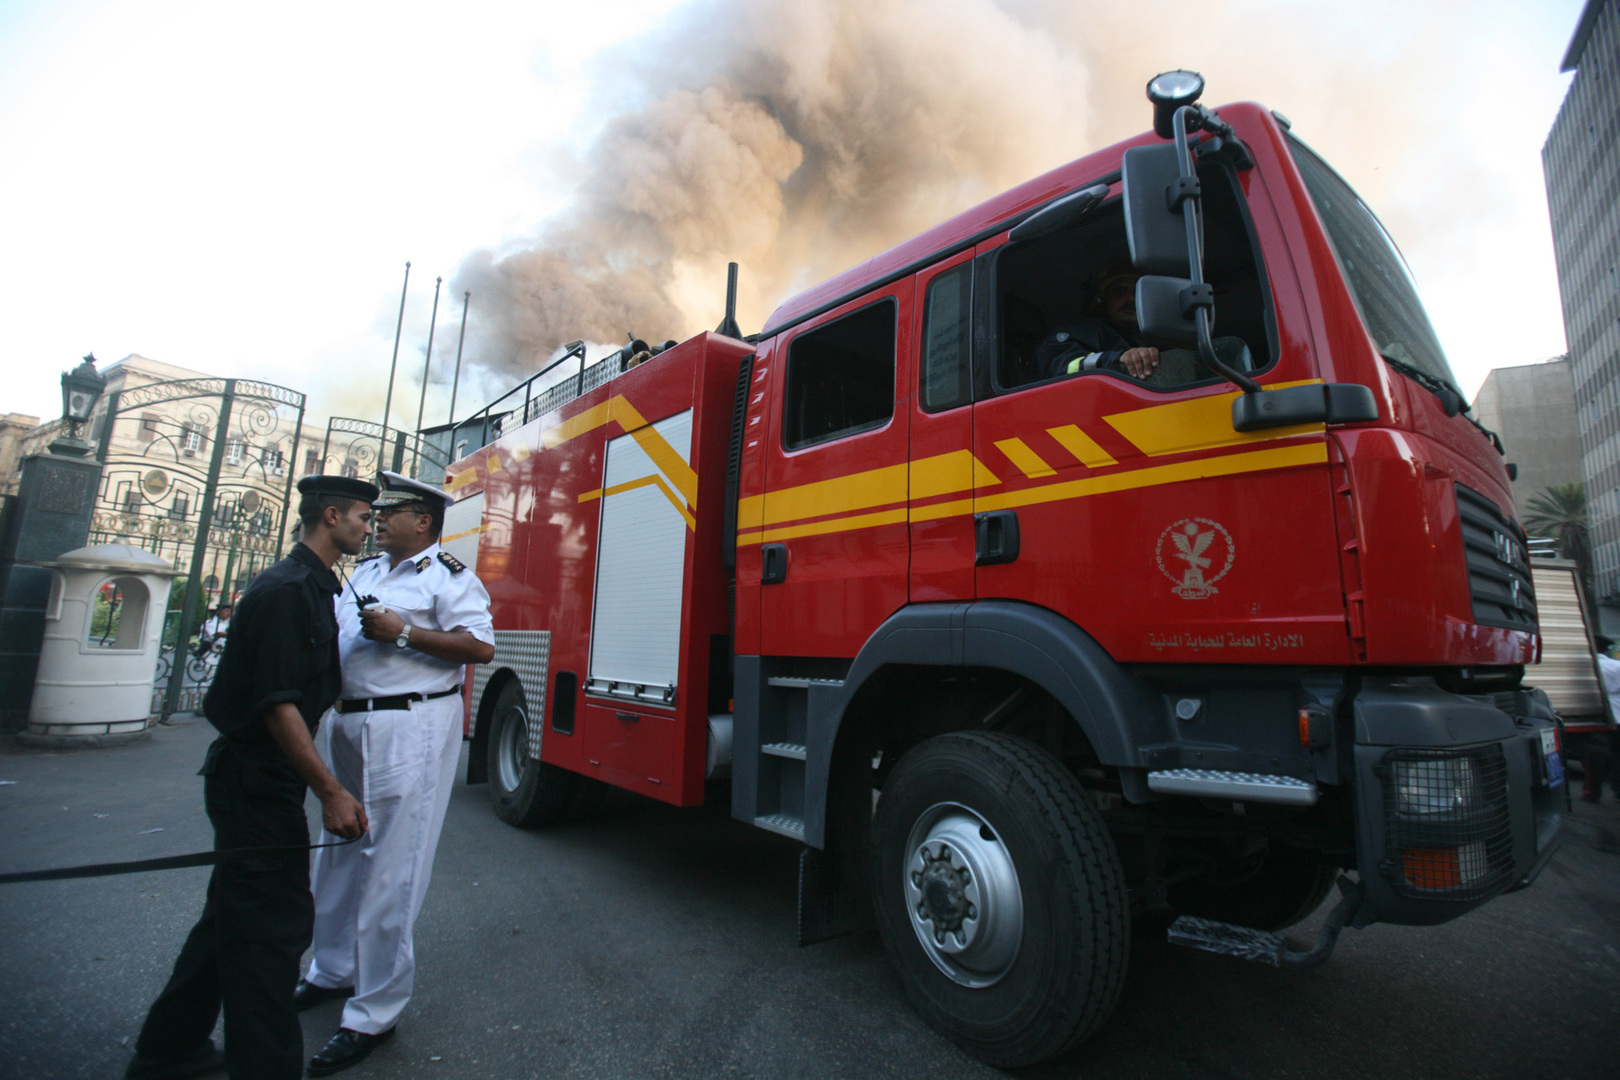 حريق ضخم في سلسلة مطاعم على كورنيش الإسكندرية (فيديو)